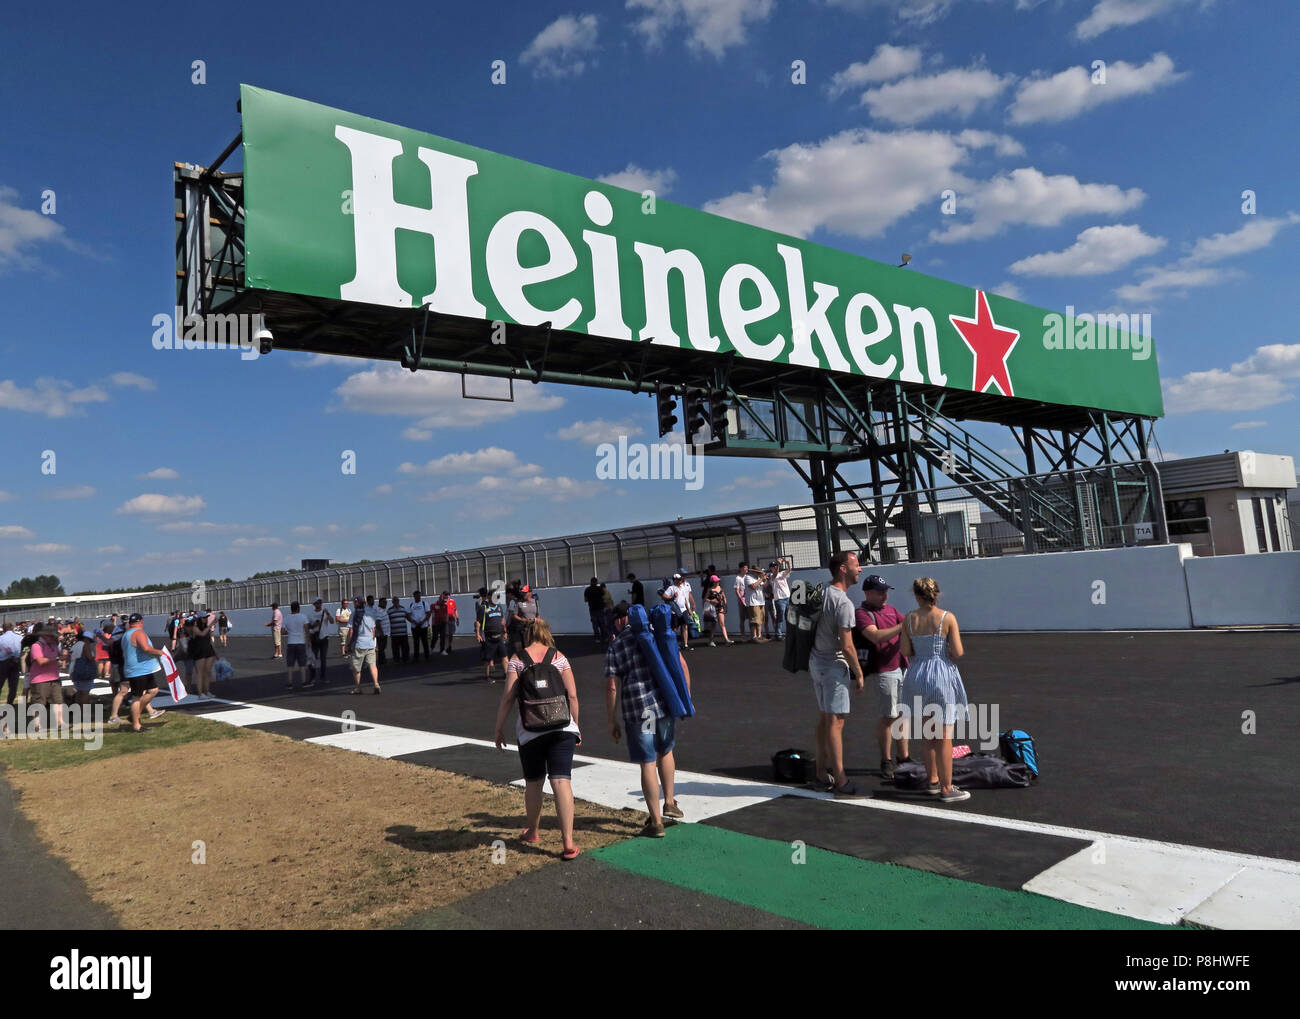 La bière Heineken publicité sur le Grand Prix de Grande-Bretagne, Trackside, Silverstone, Circuit de Silverstone, Towcester, Northampton, England, UK, NN12 8TL Banque D'Images